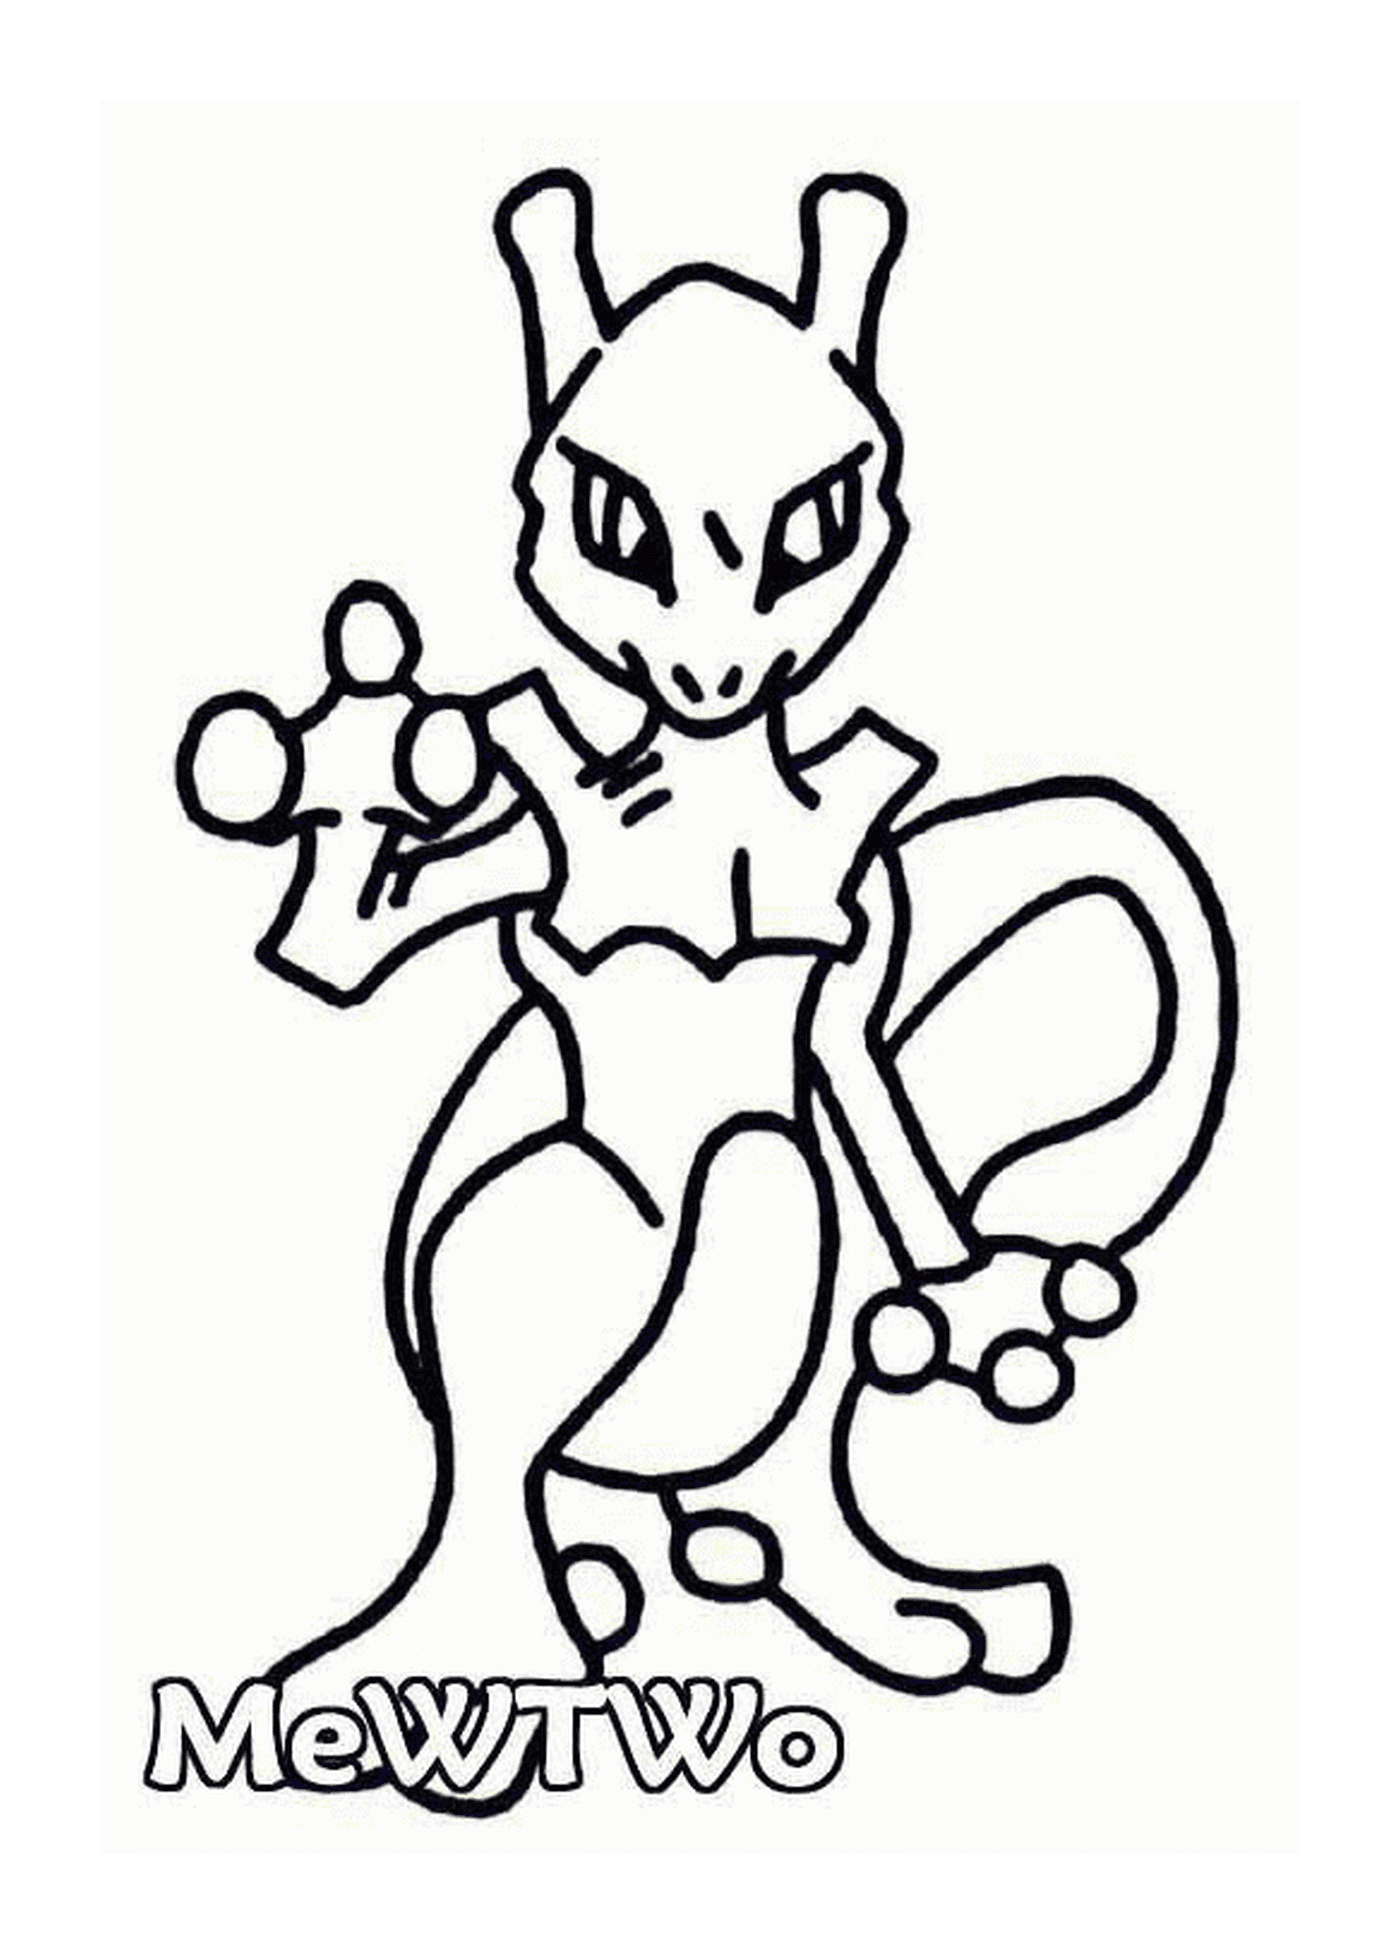  Mewtwo : Pokémon black and white 